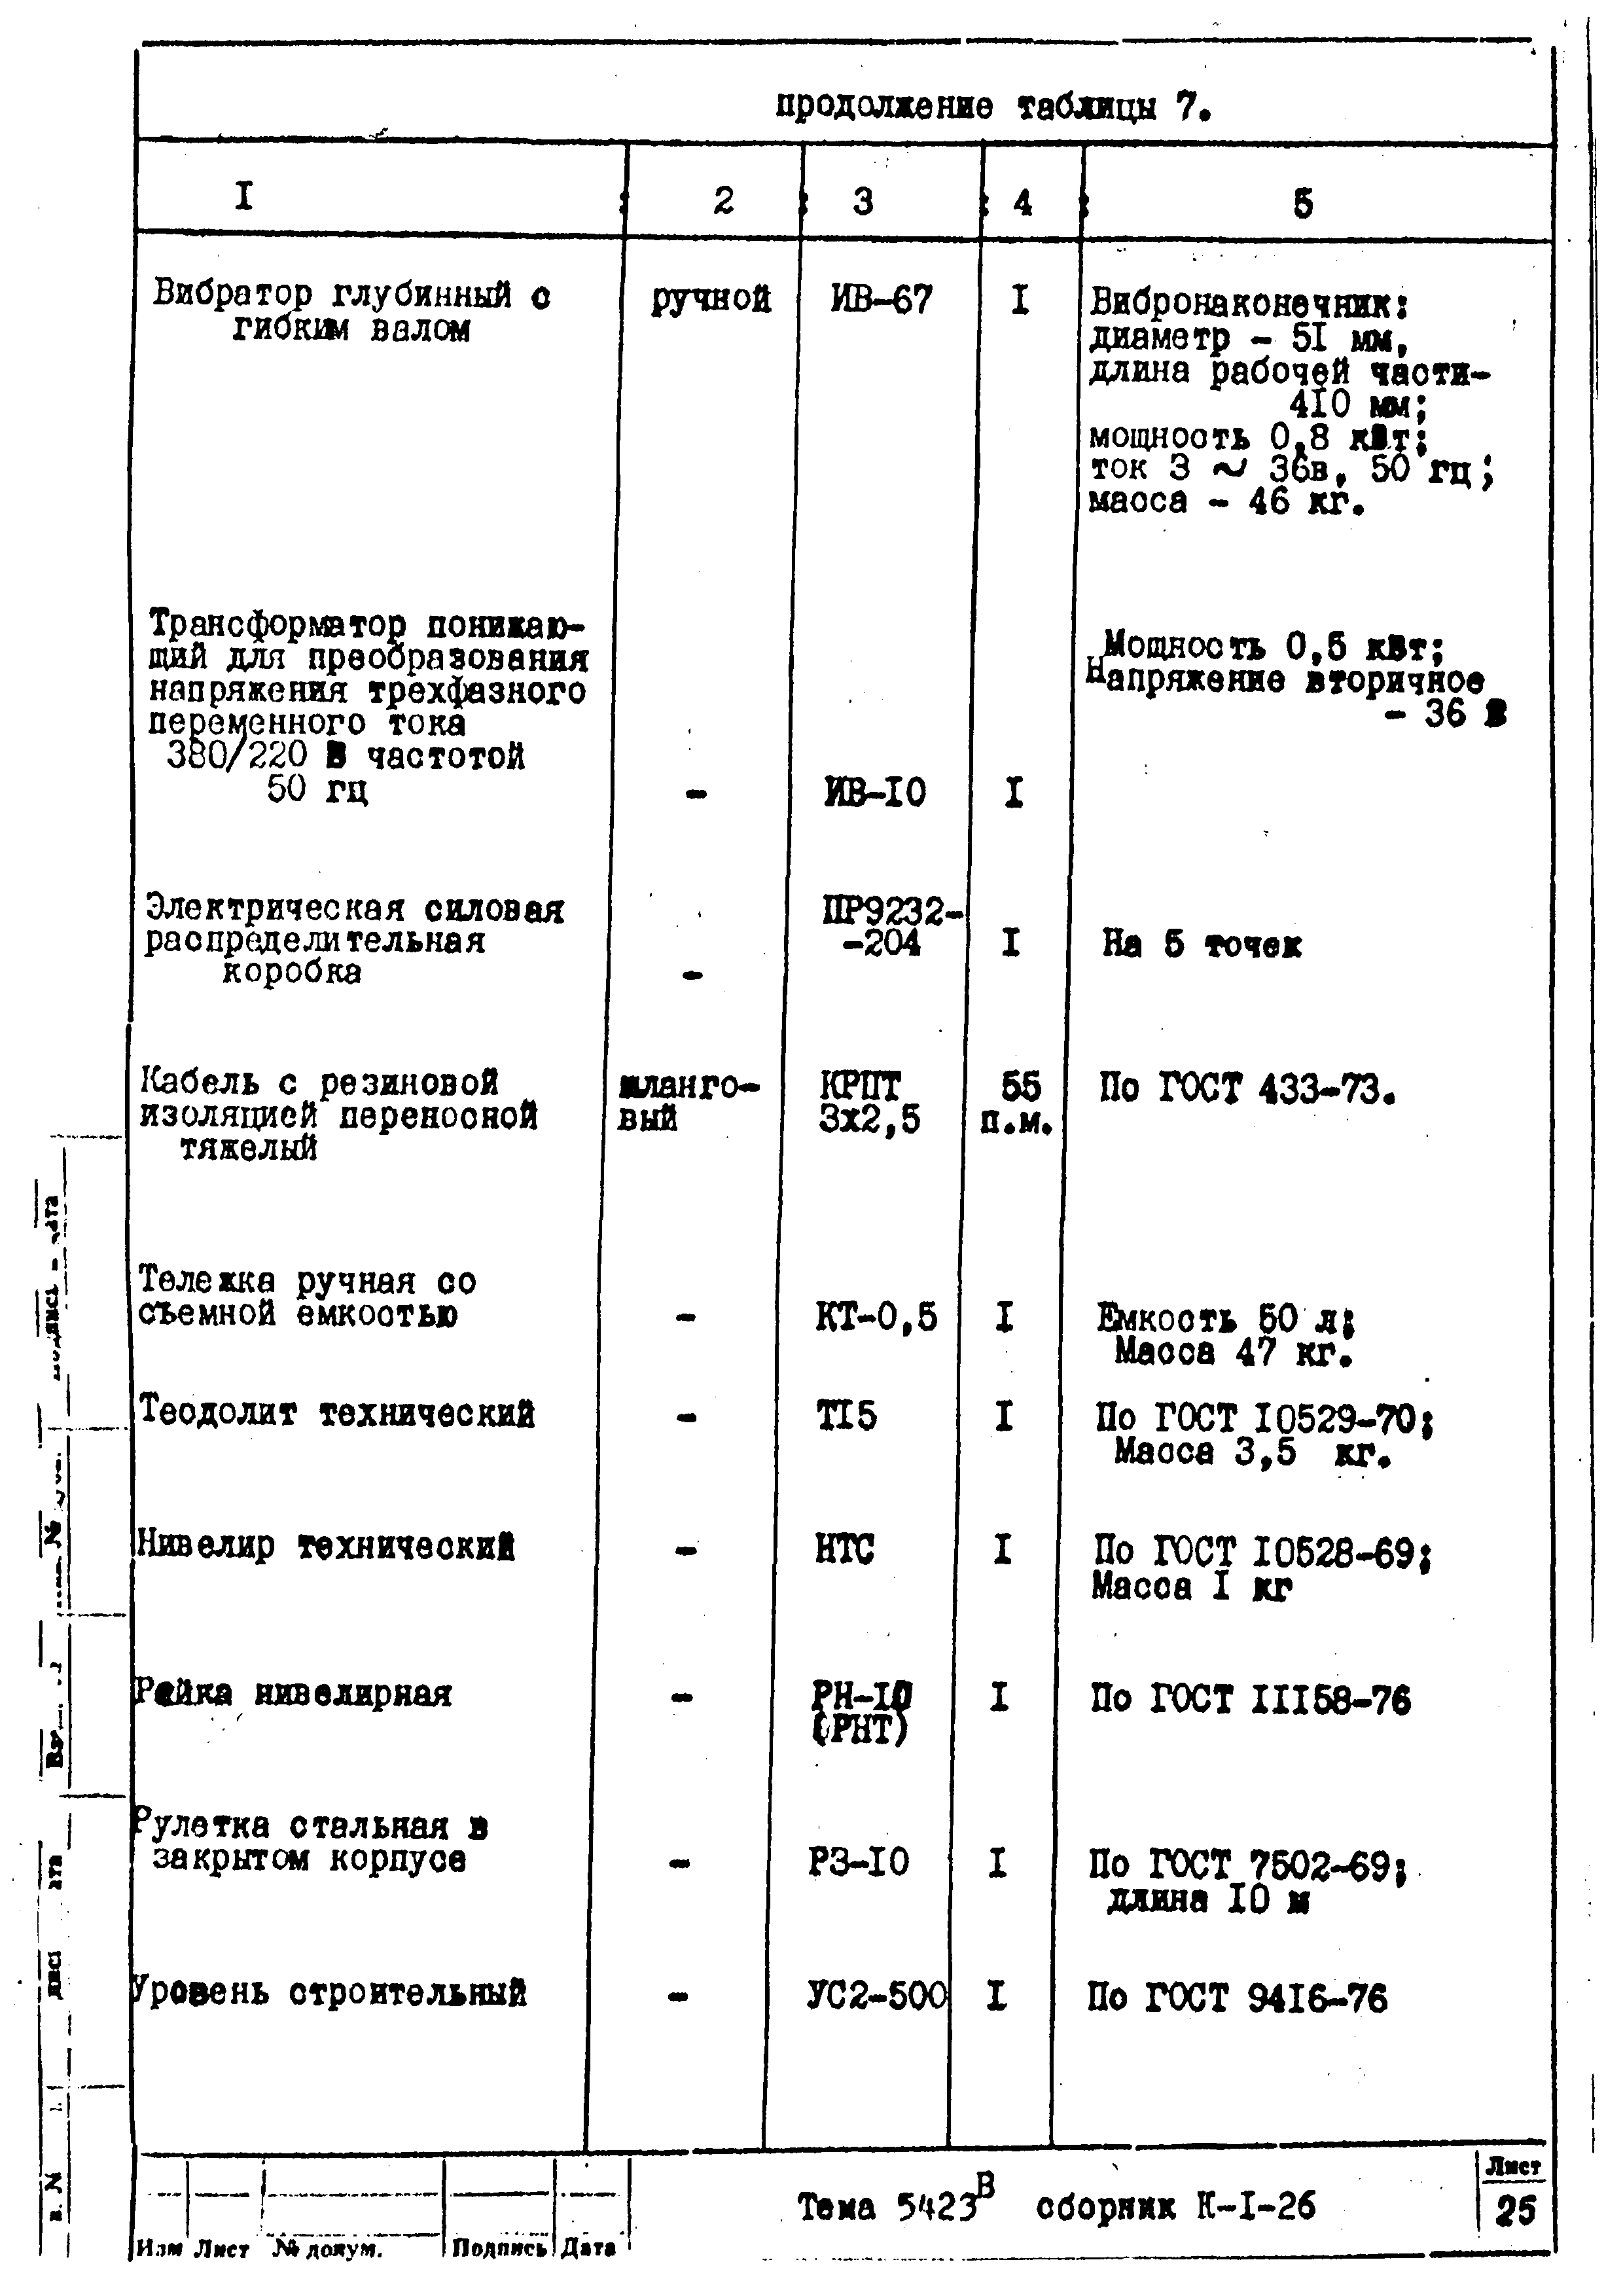 Технологическая карта К-1-26-3